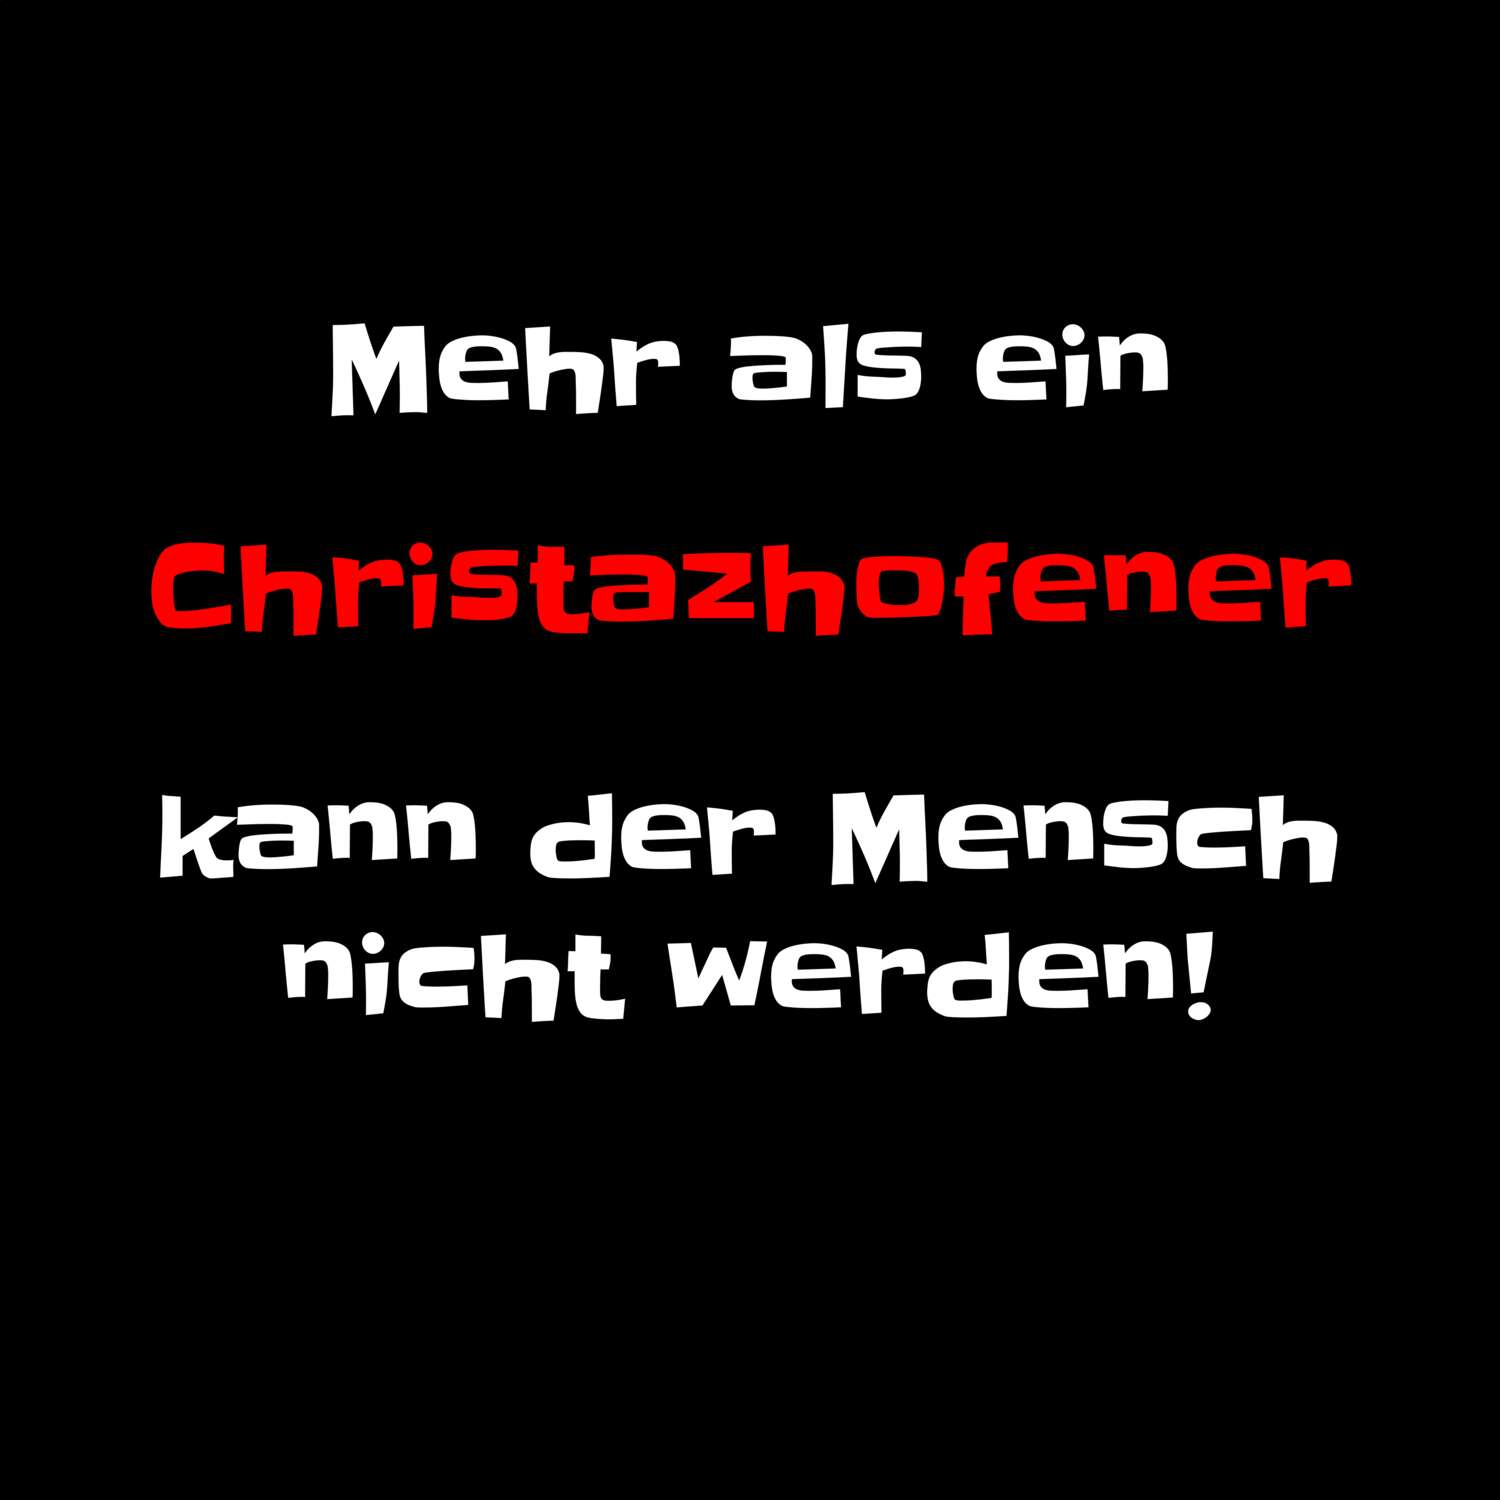 Christazhofen T-Shirt »Mehr als ein«